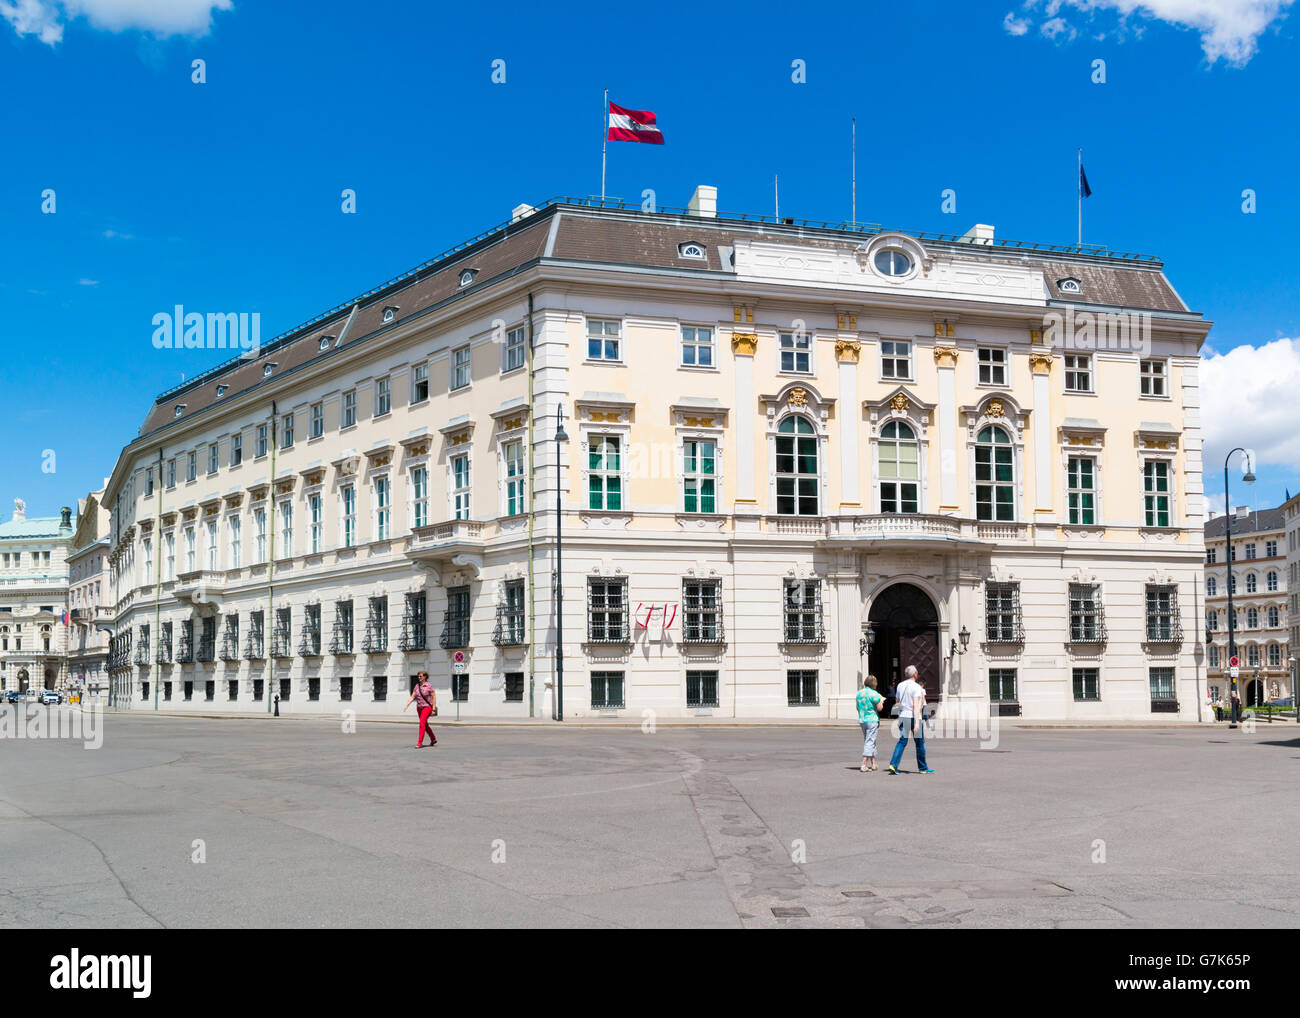 Ballhaus Quadrat mit Menschen und Bundeskanzleramt oder BKA, Bundeskanzleramt Regierungsgebäude in der Innenstadt von Wien, Österreich Stockfoto